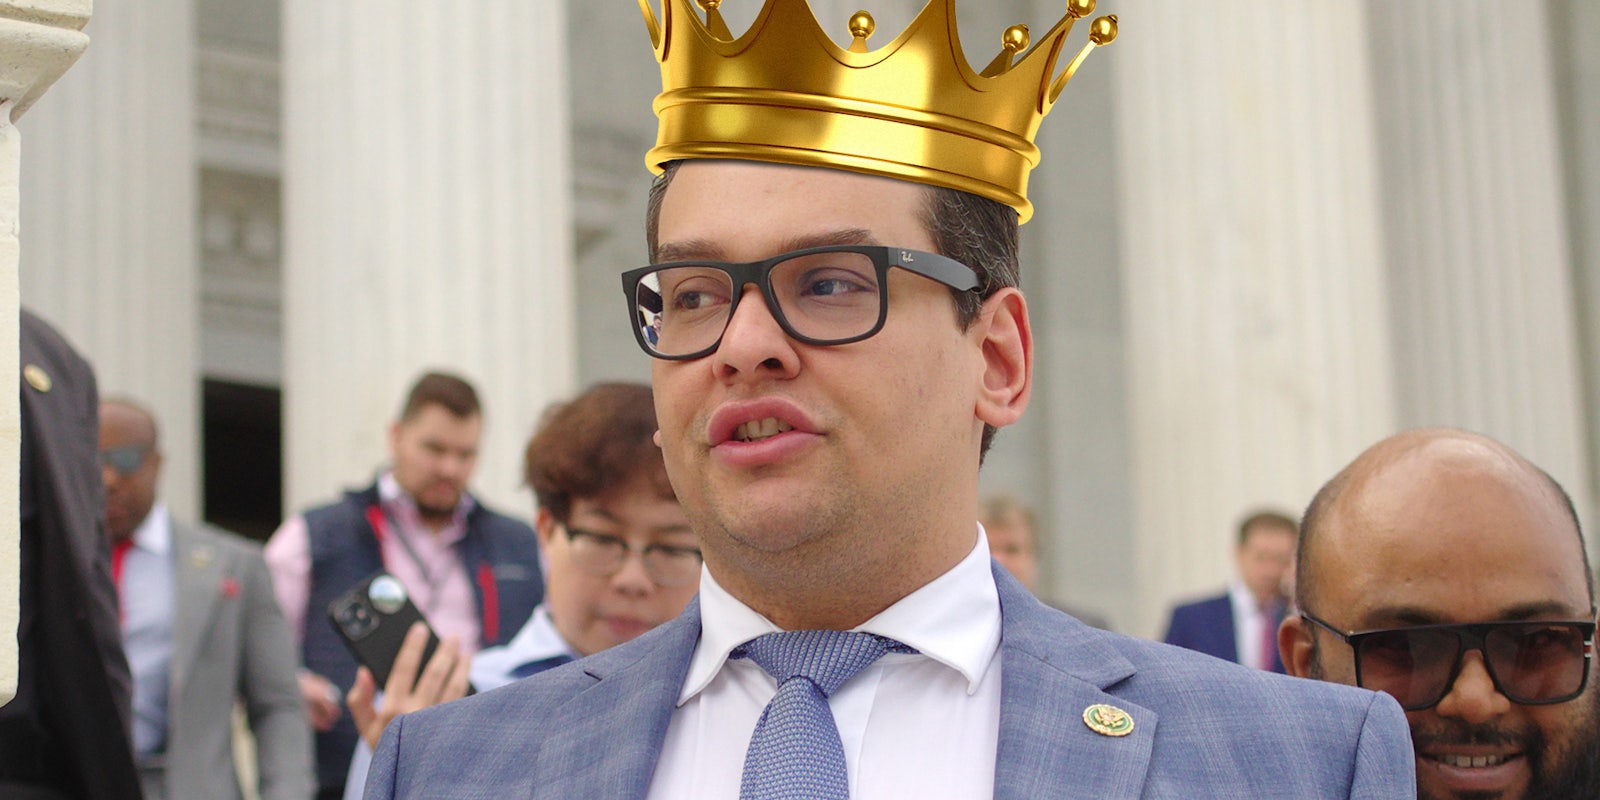 George Santos wearing a crown